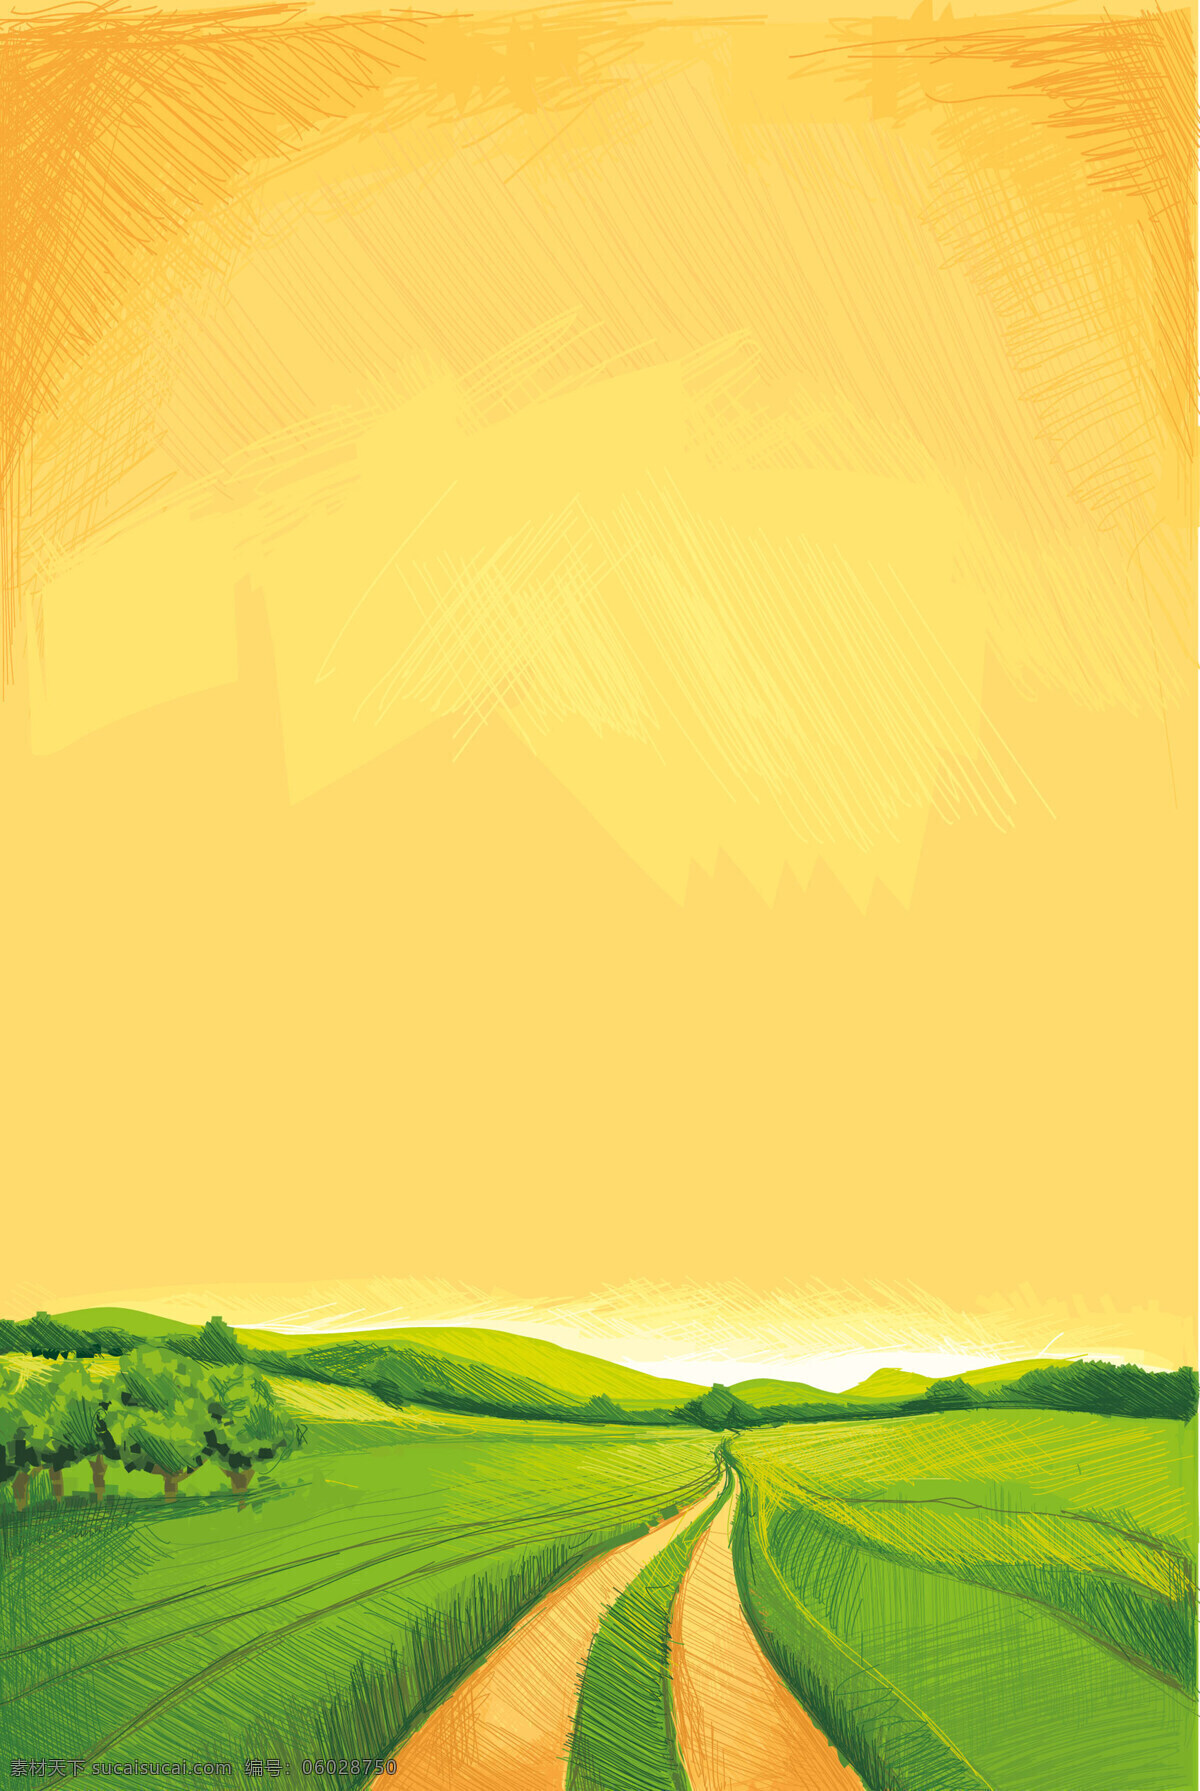 自然麦田背景 麦田 背景 黄色 绿色 自然 惬意 暖色 底纹边框 背景底纹